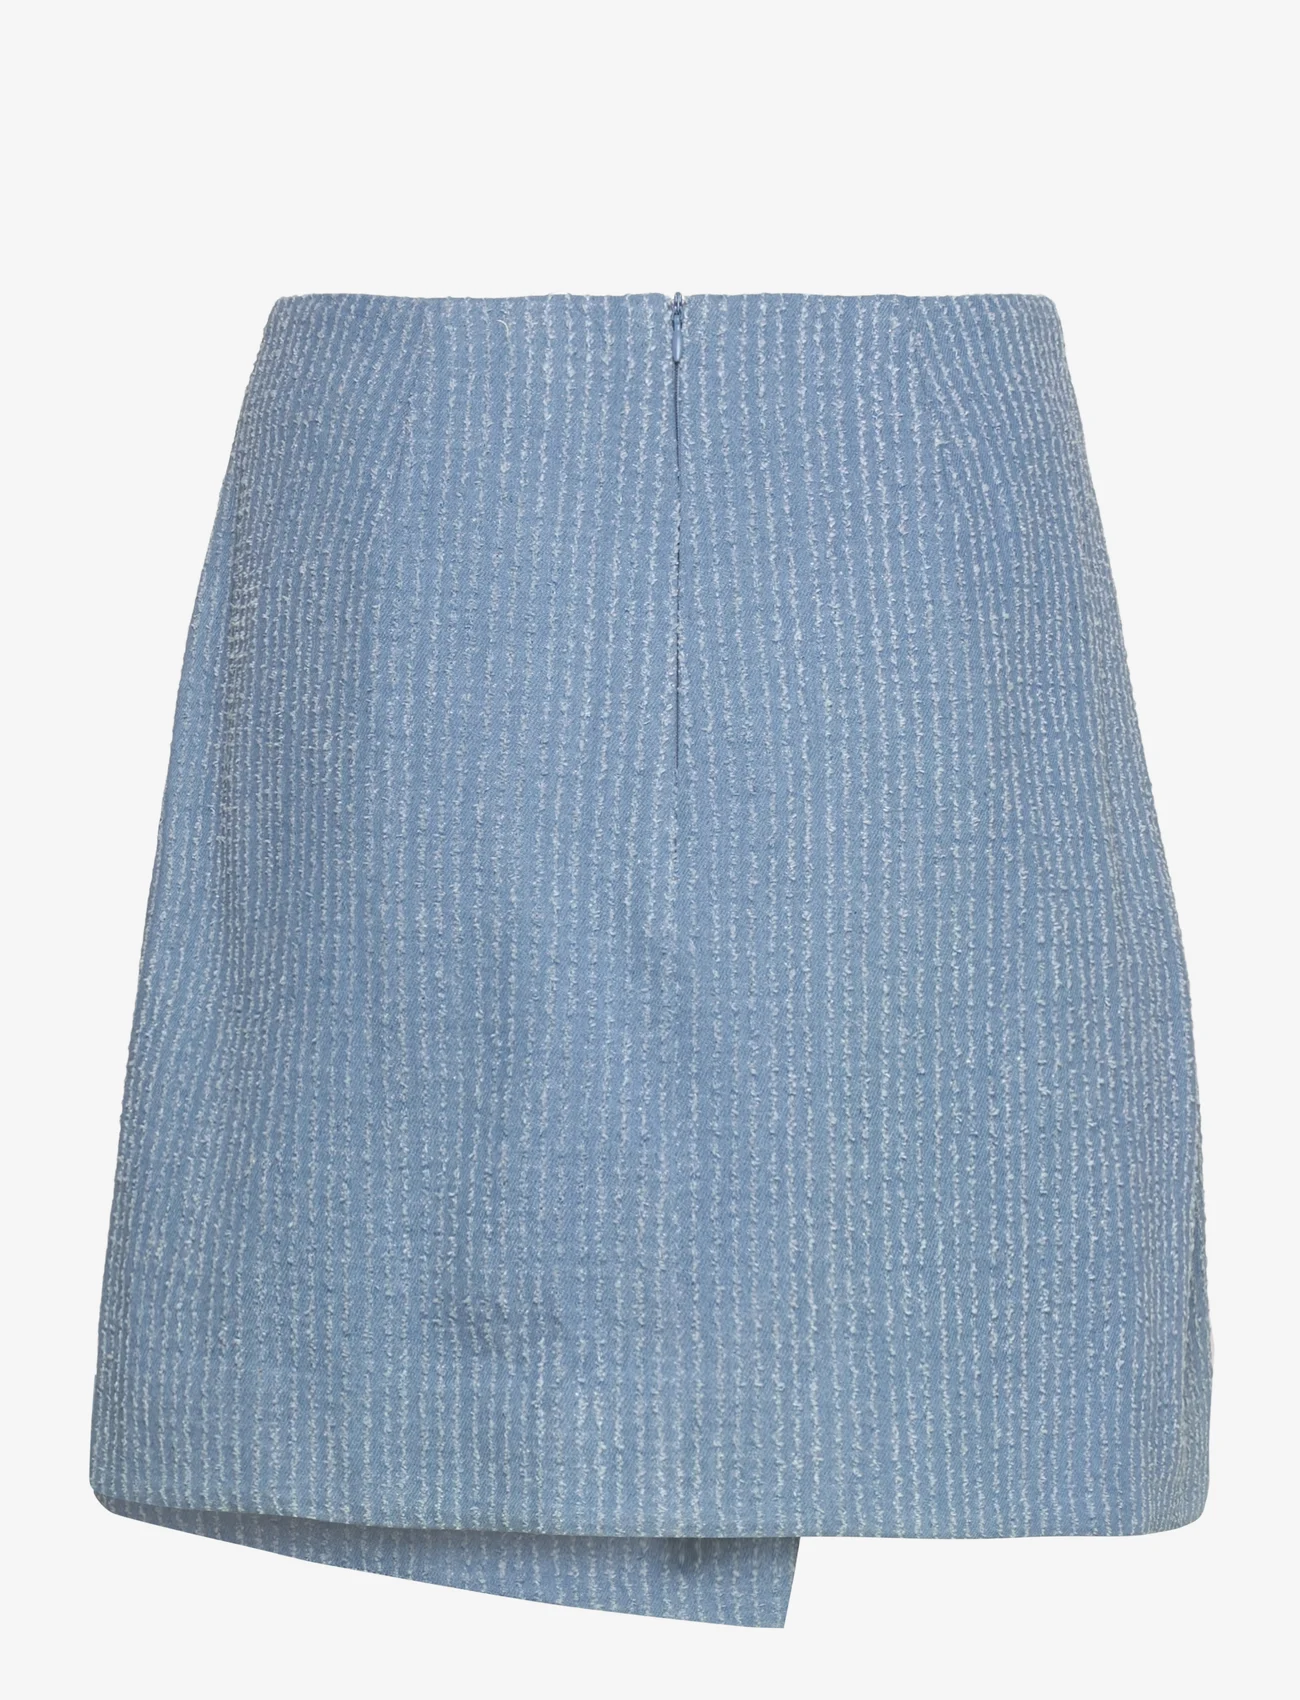 Minus - MSVelmia Short Skirt - short skirts - lyseblÅ - 1